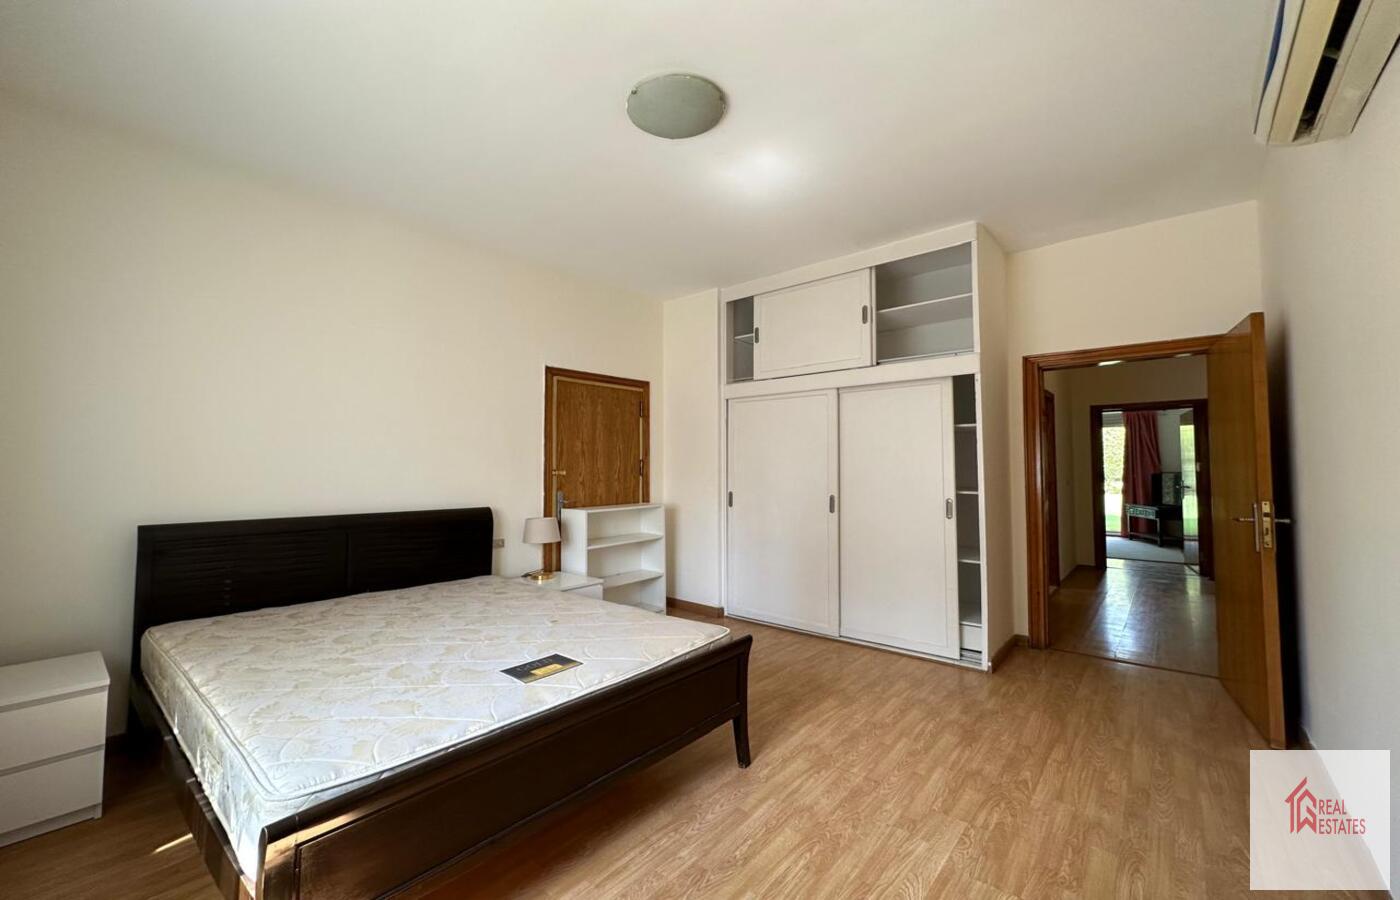 الشقة الثانية الطابق الأول 3 غرف نوم حمامين غرفة غسيل غرفة معيشة كبيرة مع مطبخ مفتوح وحديقة كبيرة مع مسبح. الإيجار 4200 دولار أمريكي